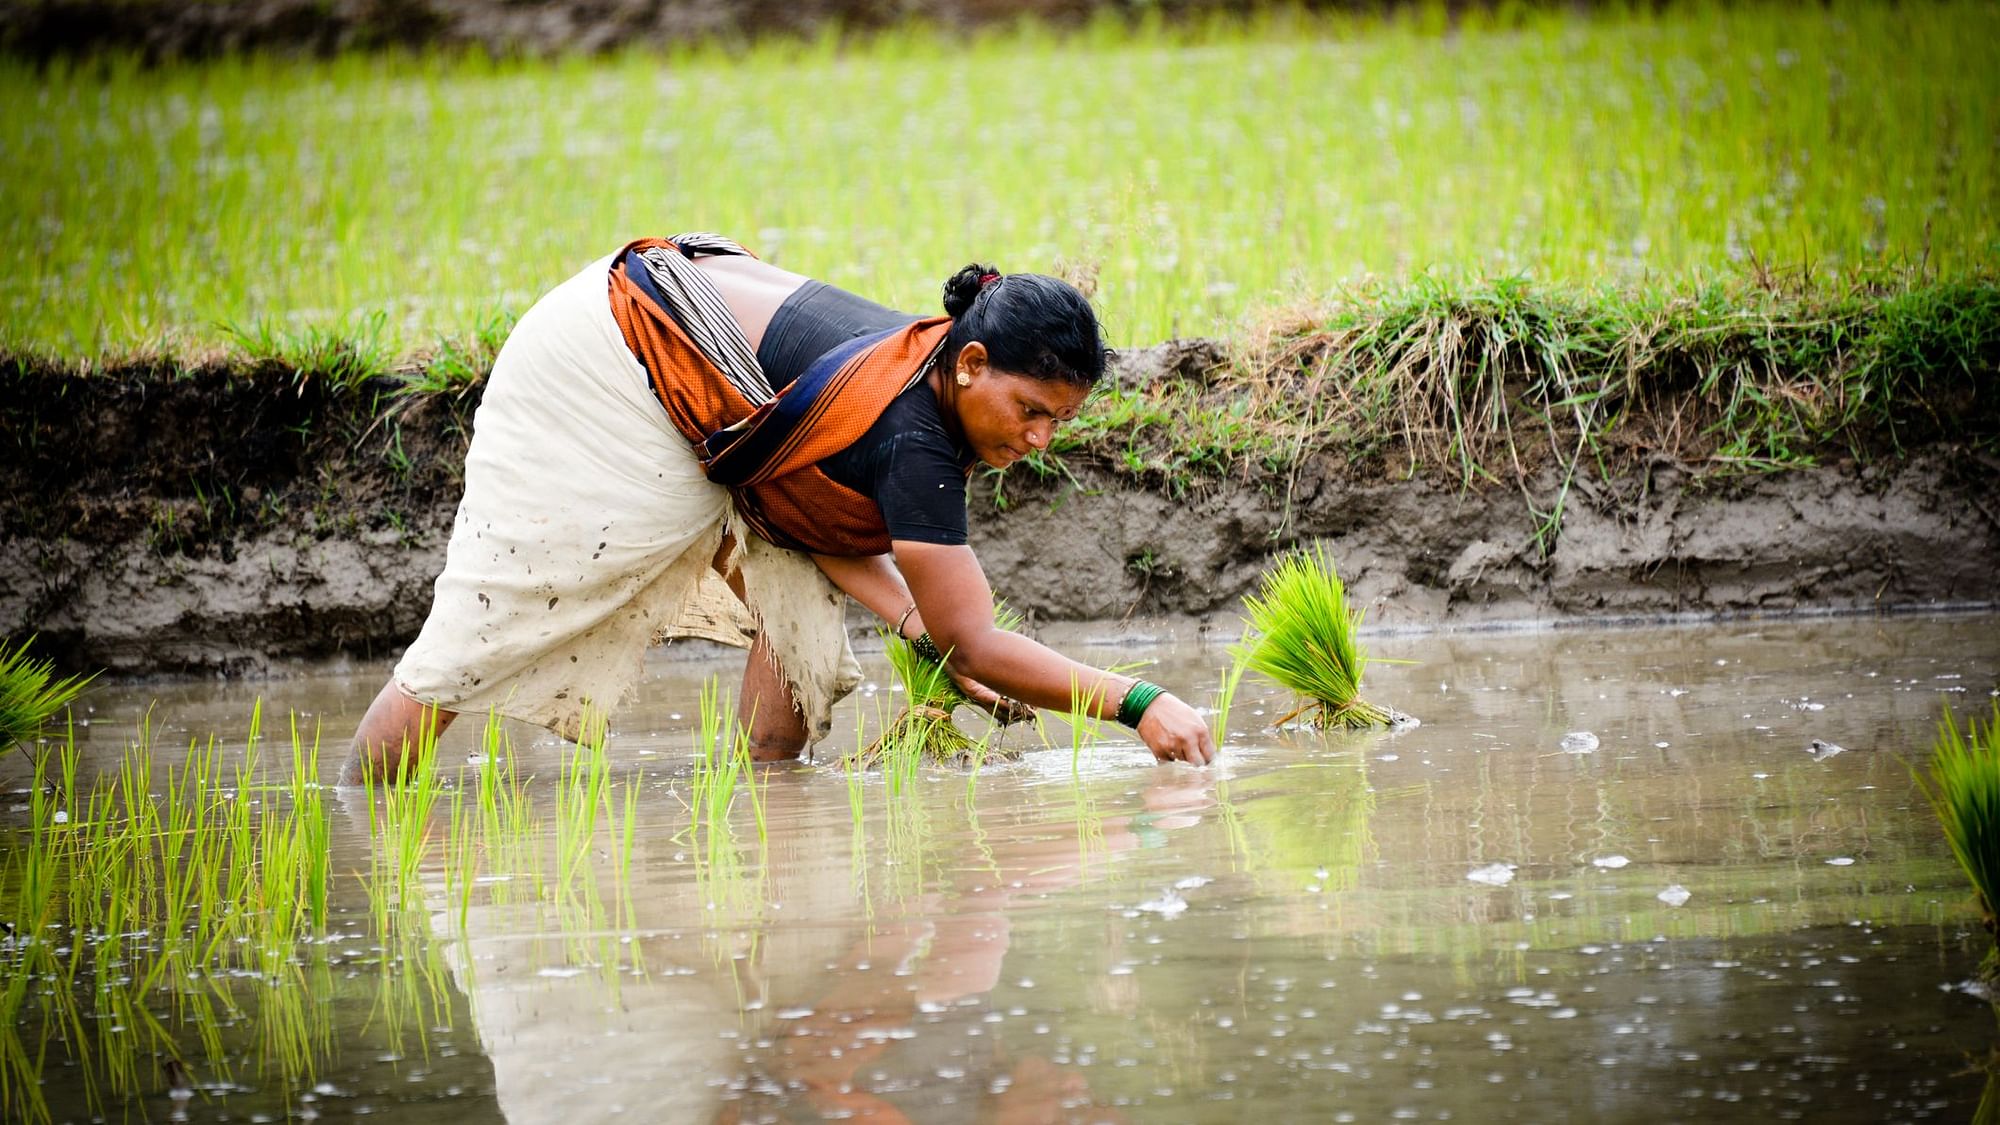 वित्त मंत्री निर्मला सीतारमण ने अपने बजट भाषण में शून्य बजट खेती अपनाने की बात कही